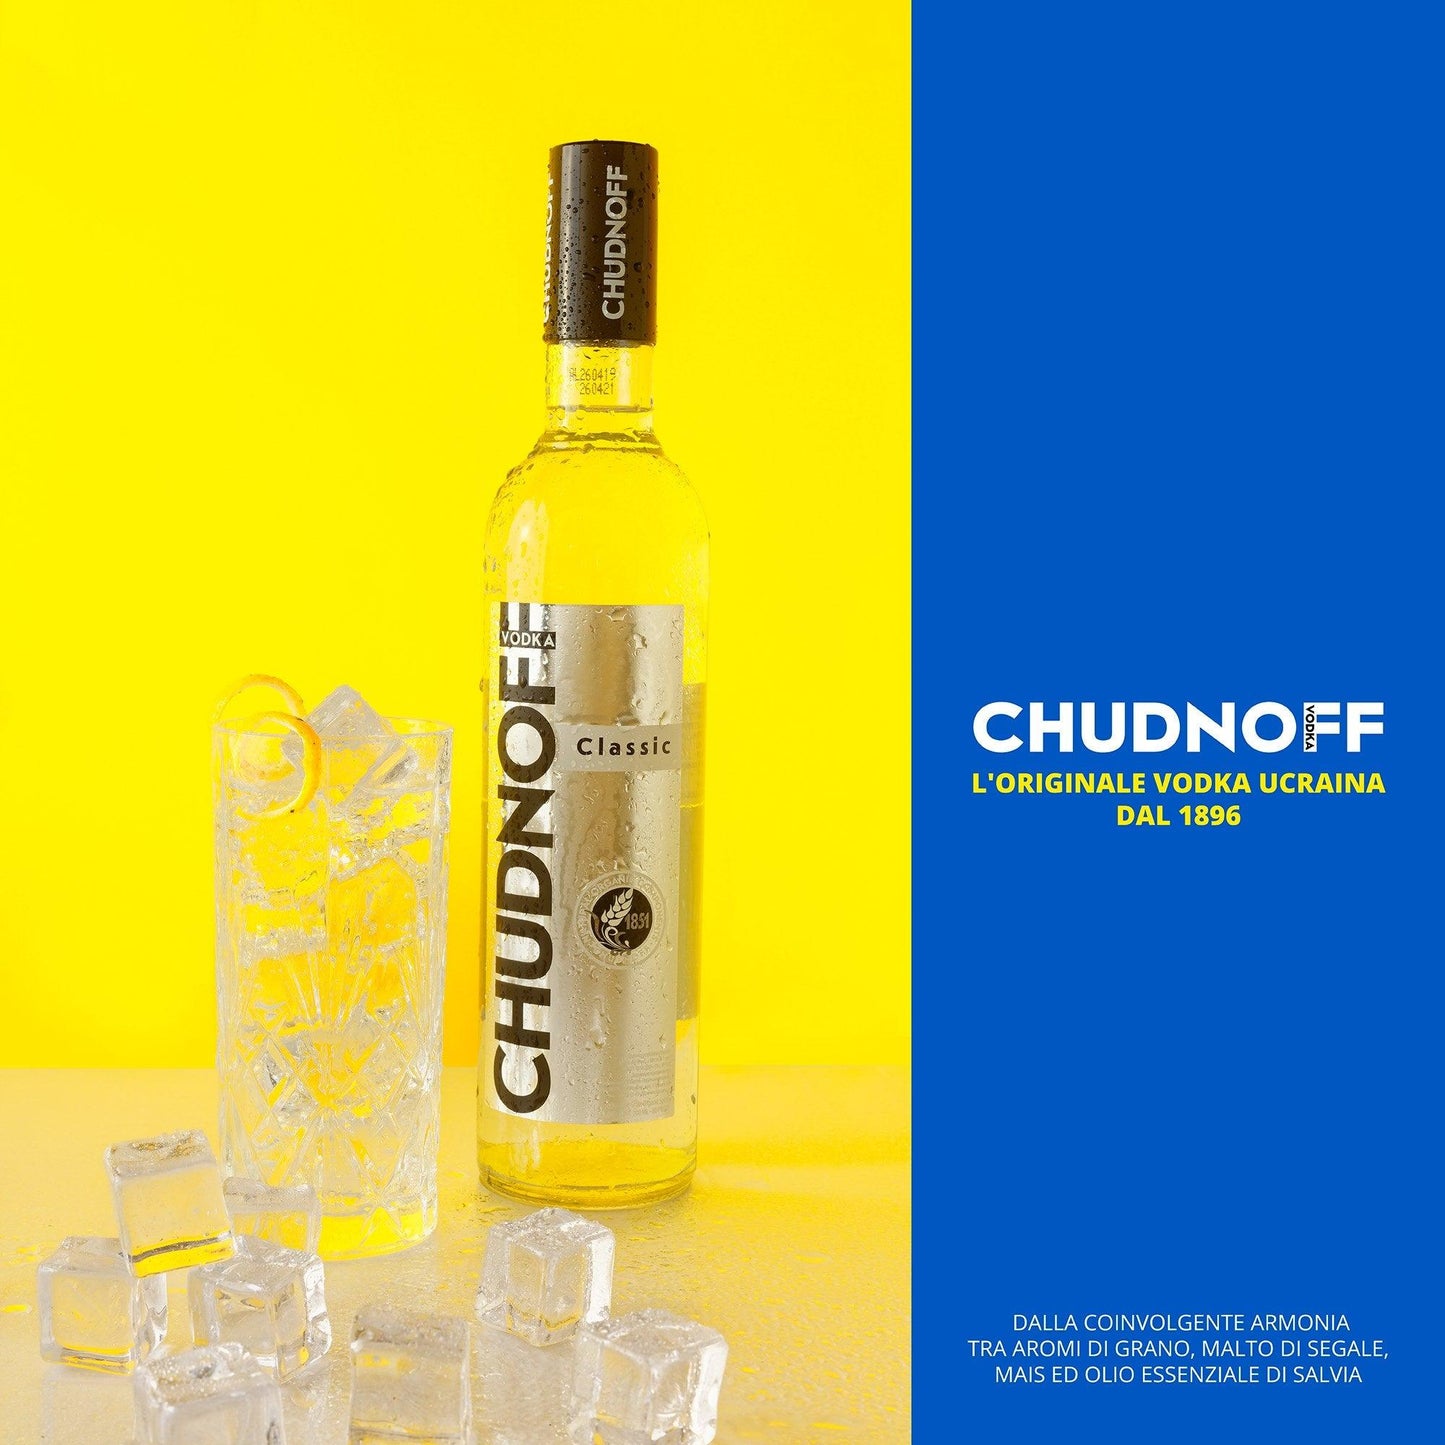 Vodka "Chudnoff" Classic - I migliori prodotti Made in Italy da Fiera Monza e Brianza Shop - Solo 15€! Acquista subito su Fiera di Monza Shop!